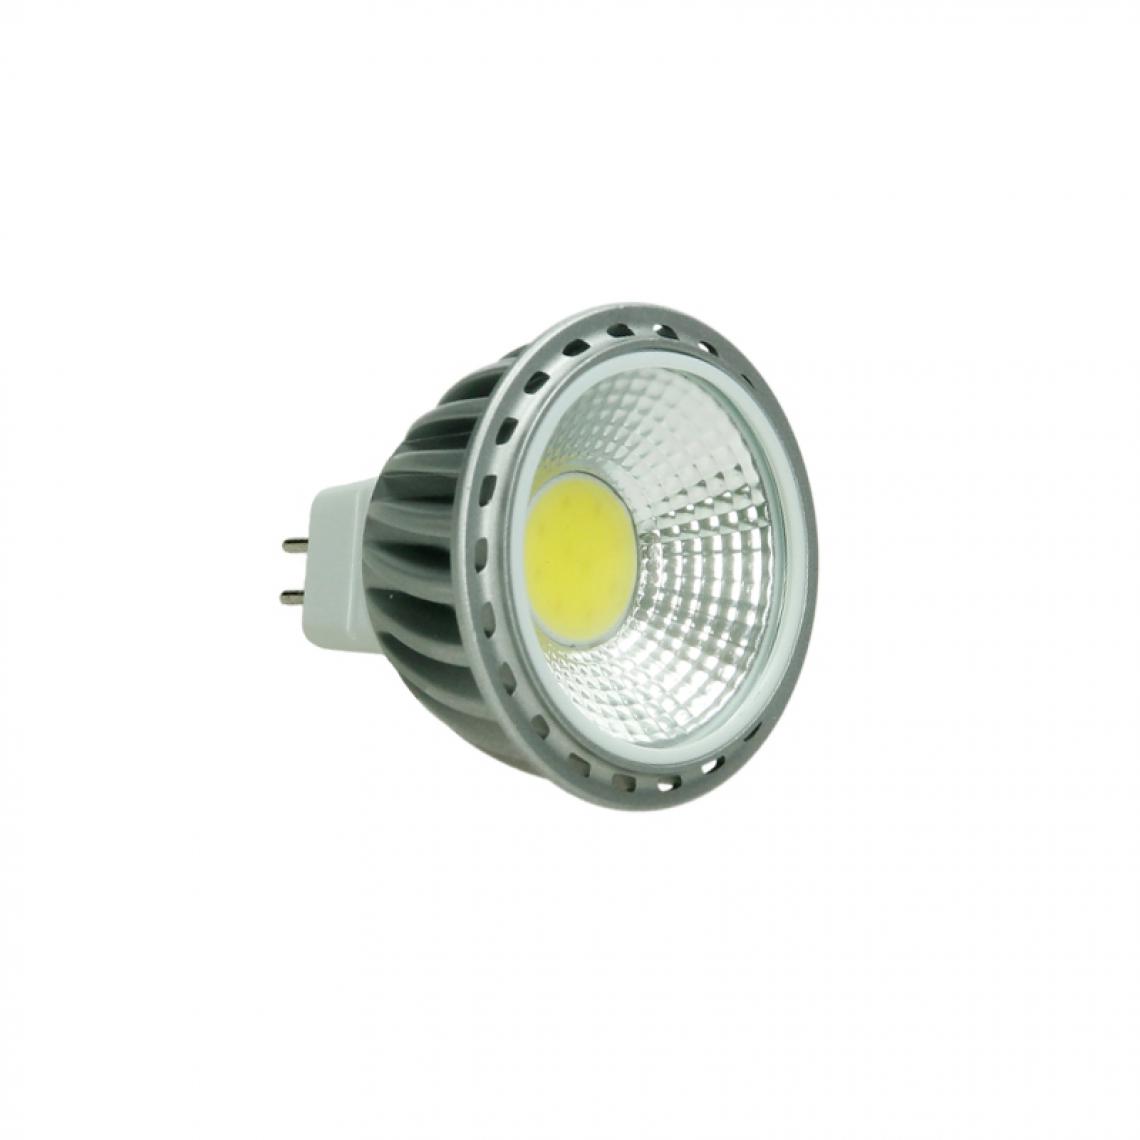 Ecd Germany - ECD Germany 4 x MR16 COB spot 6W HAUTE PUISSANCE Lampe à économie d'énergie d'environ 378 lumens remplace Lampe halogène 45W angle de 60 degrés Blanc Neutre 4000K - Ampoules LED